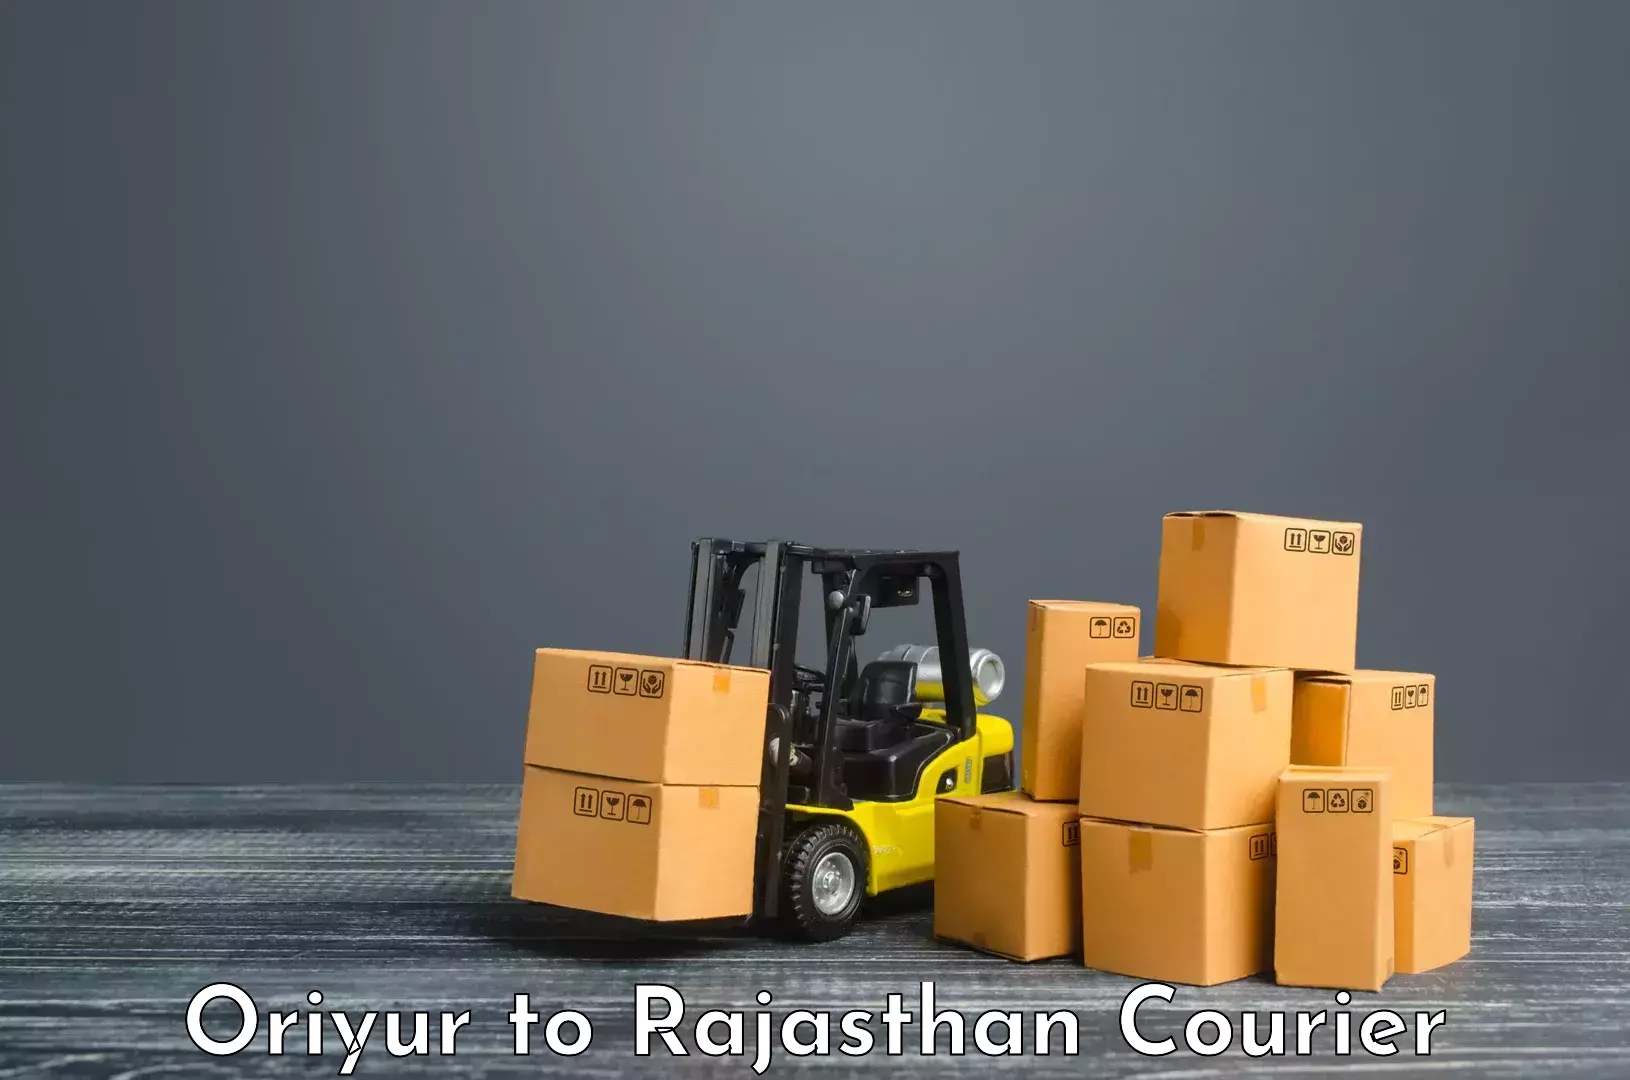 Comprehensive freight services Oriyur to Bijainagar